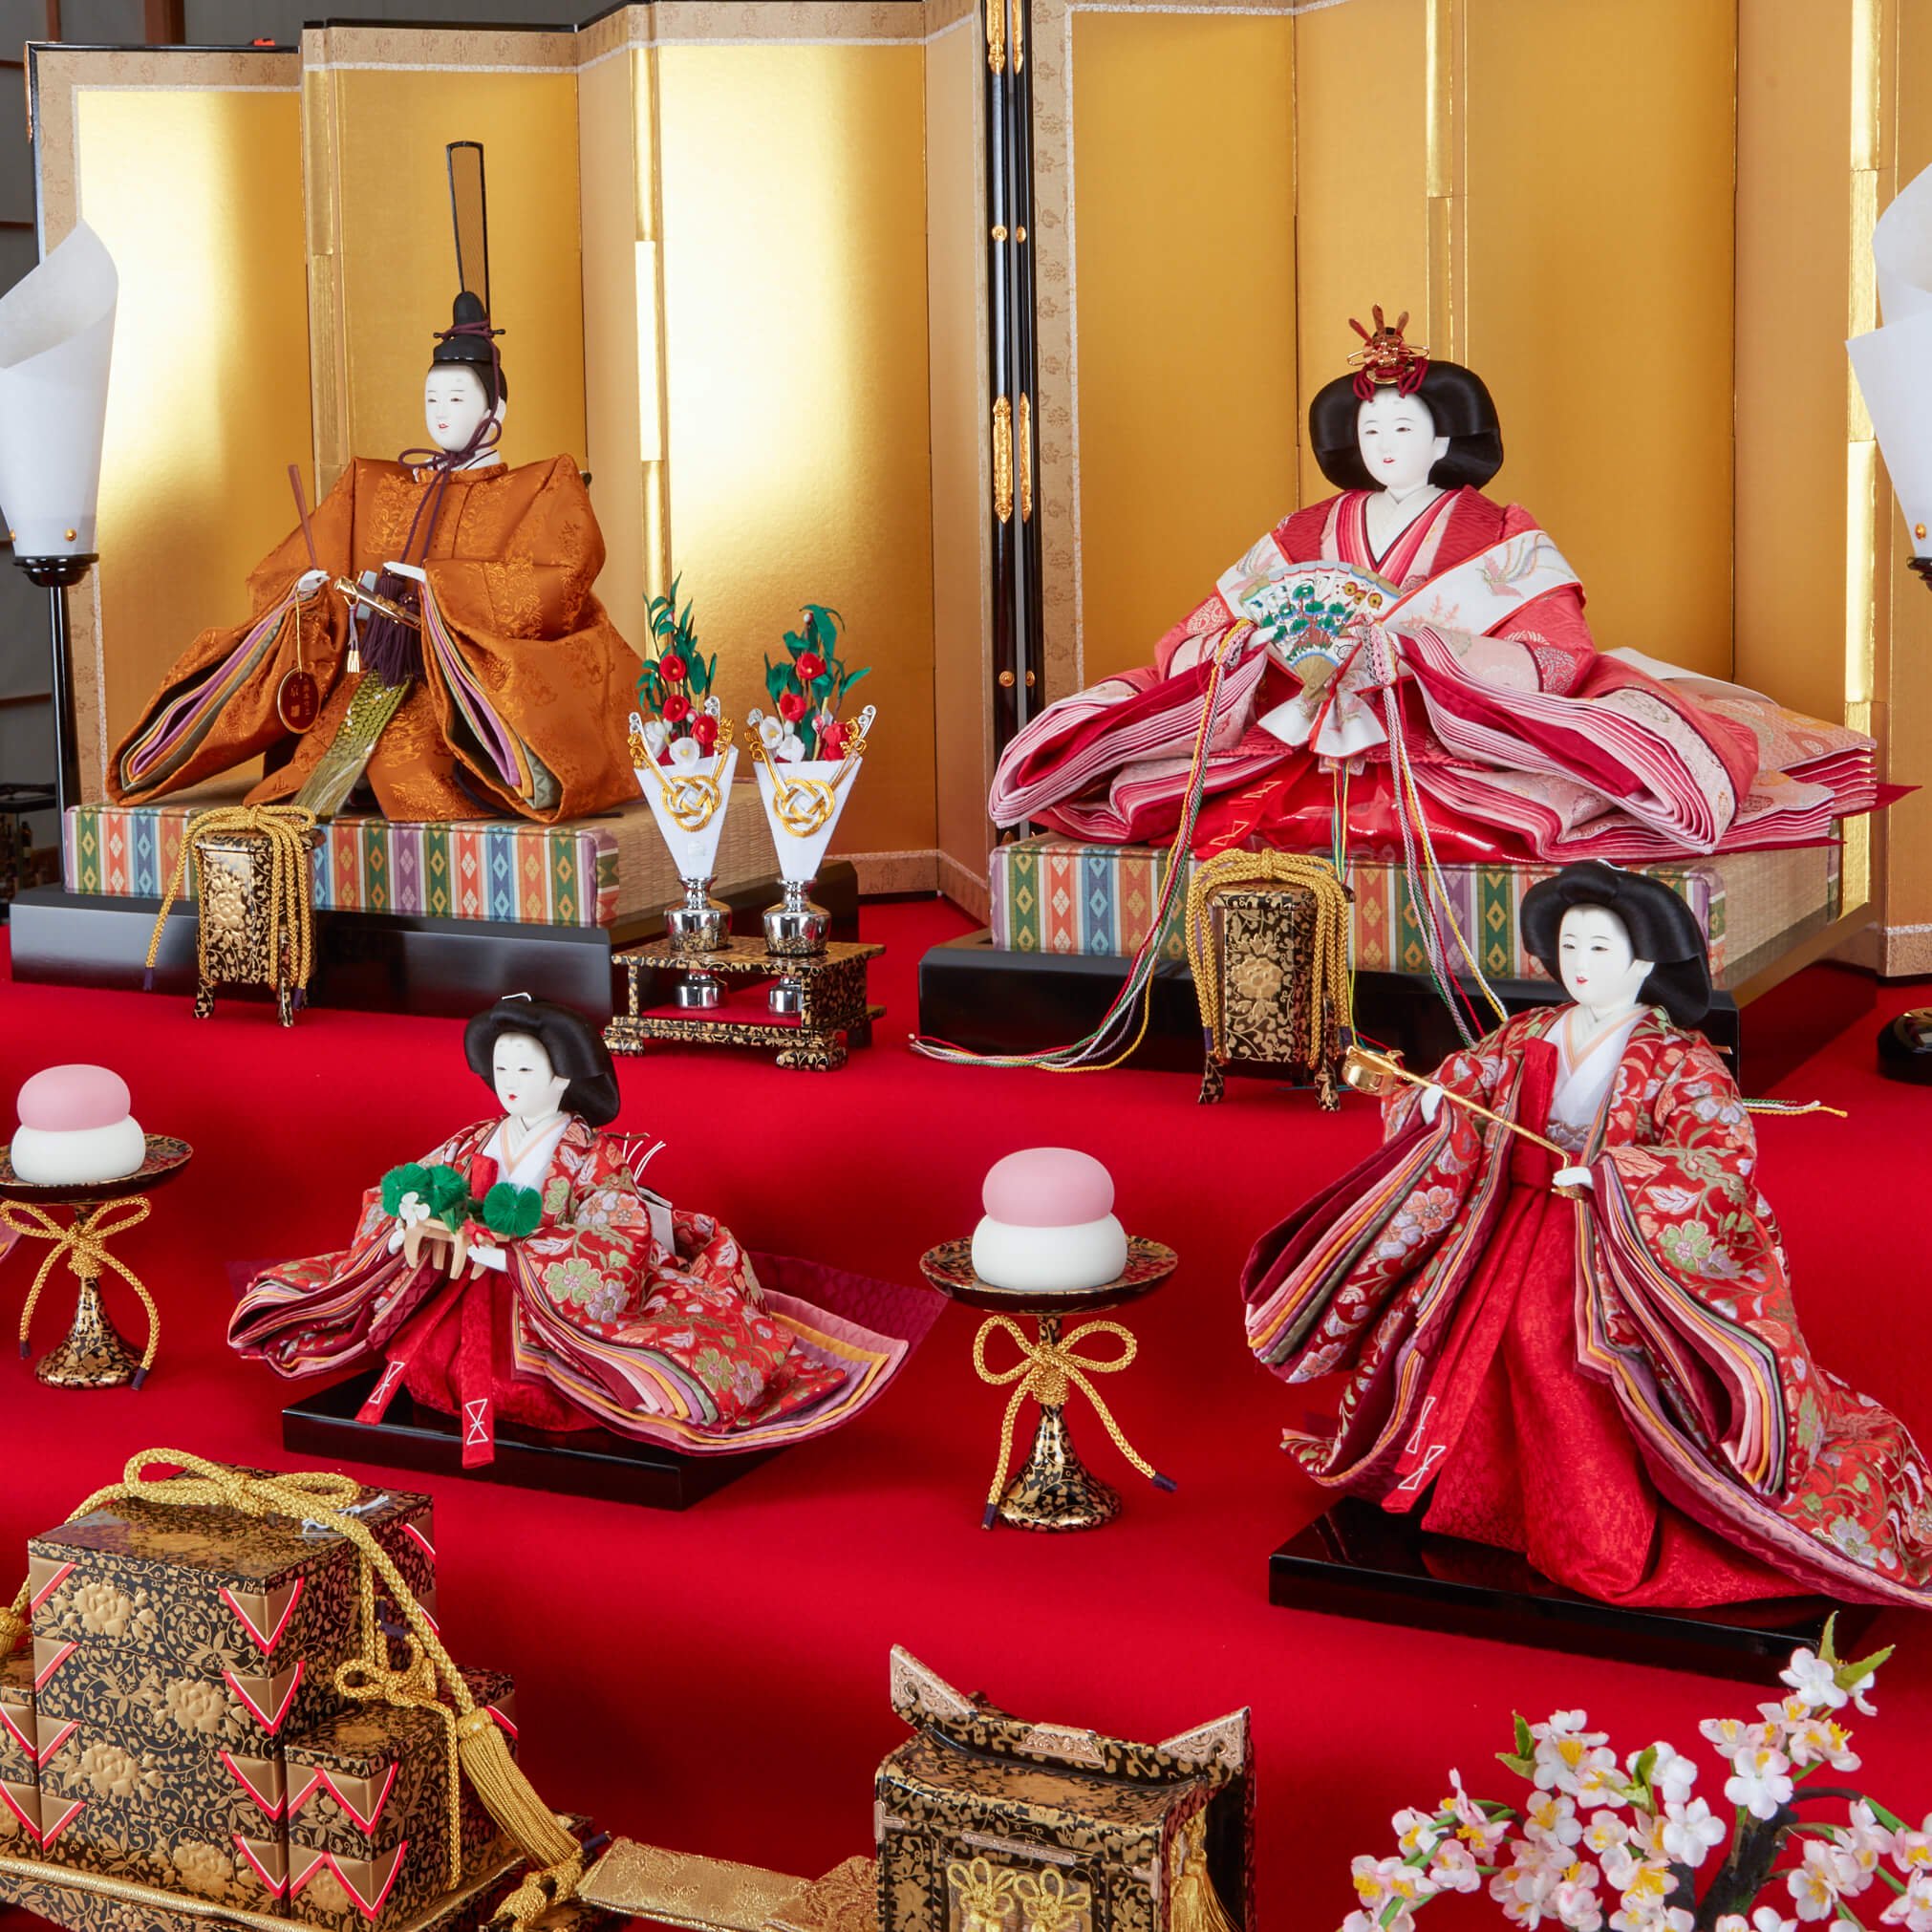 驚きの値段 美品ひな祭り七段飾り一式装備 ひな人形 セット 御殿火鉢 